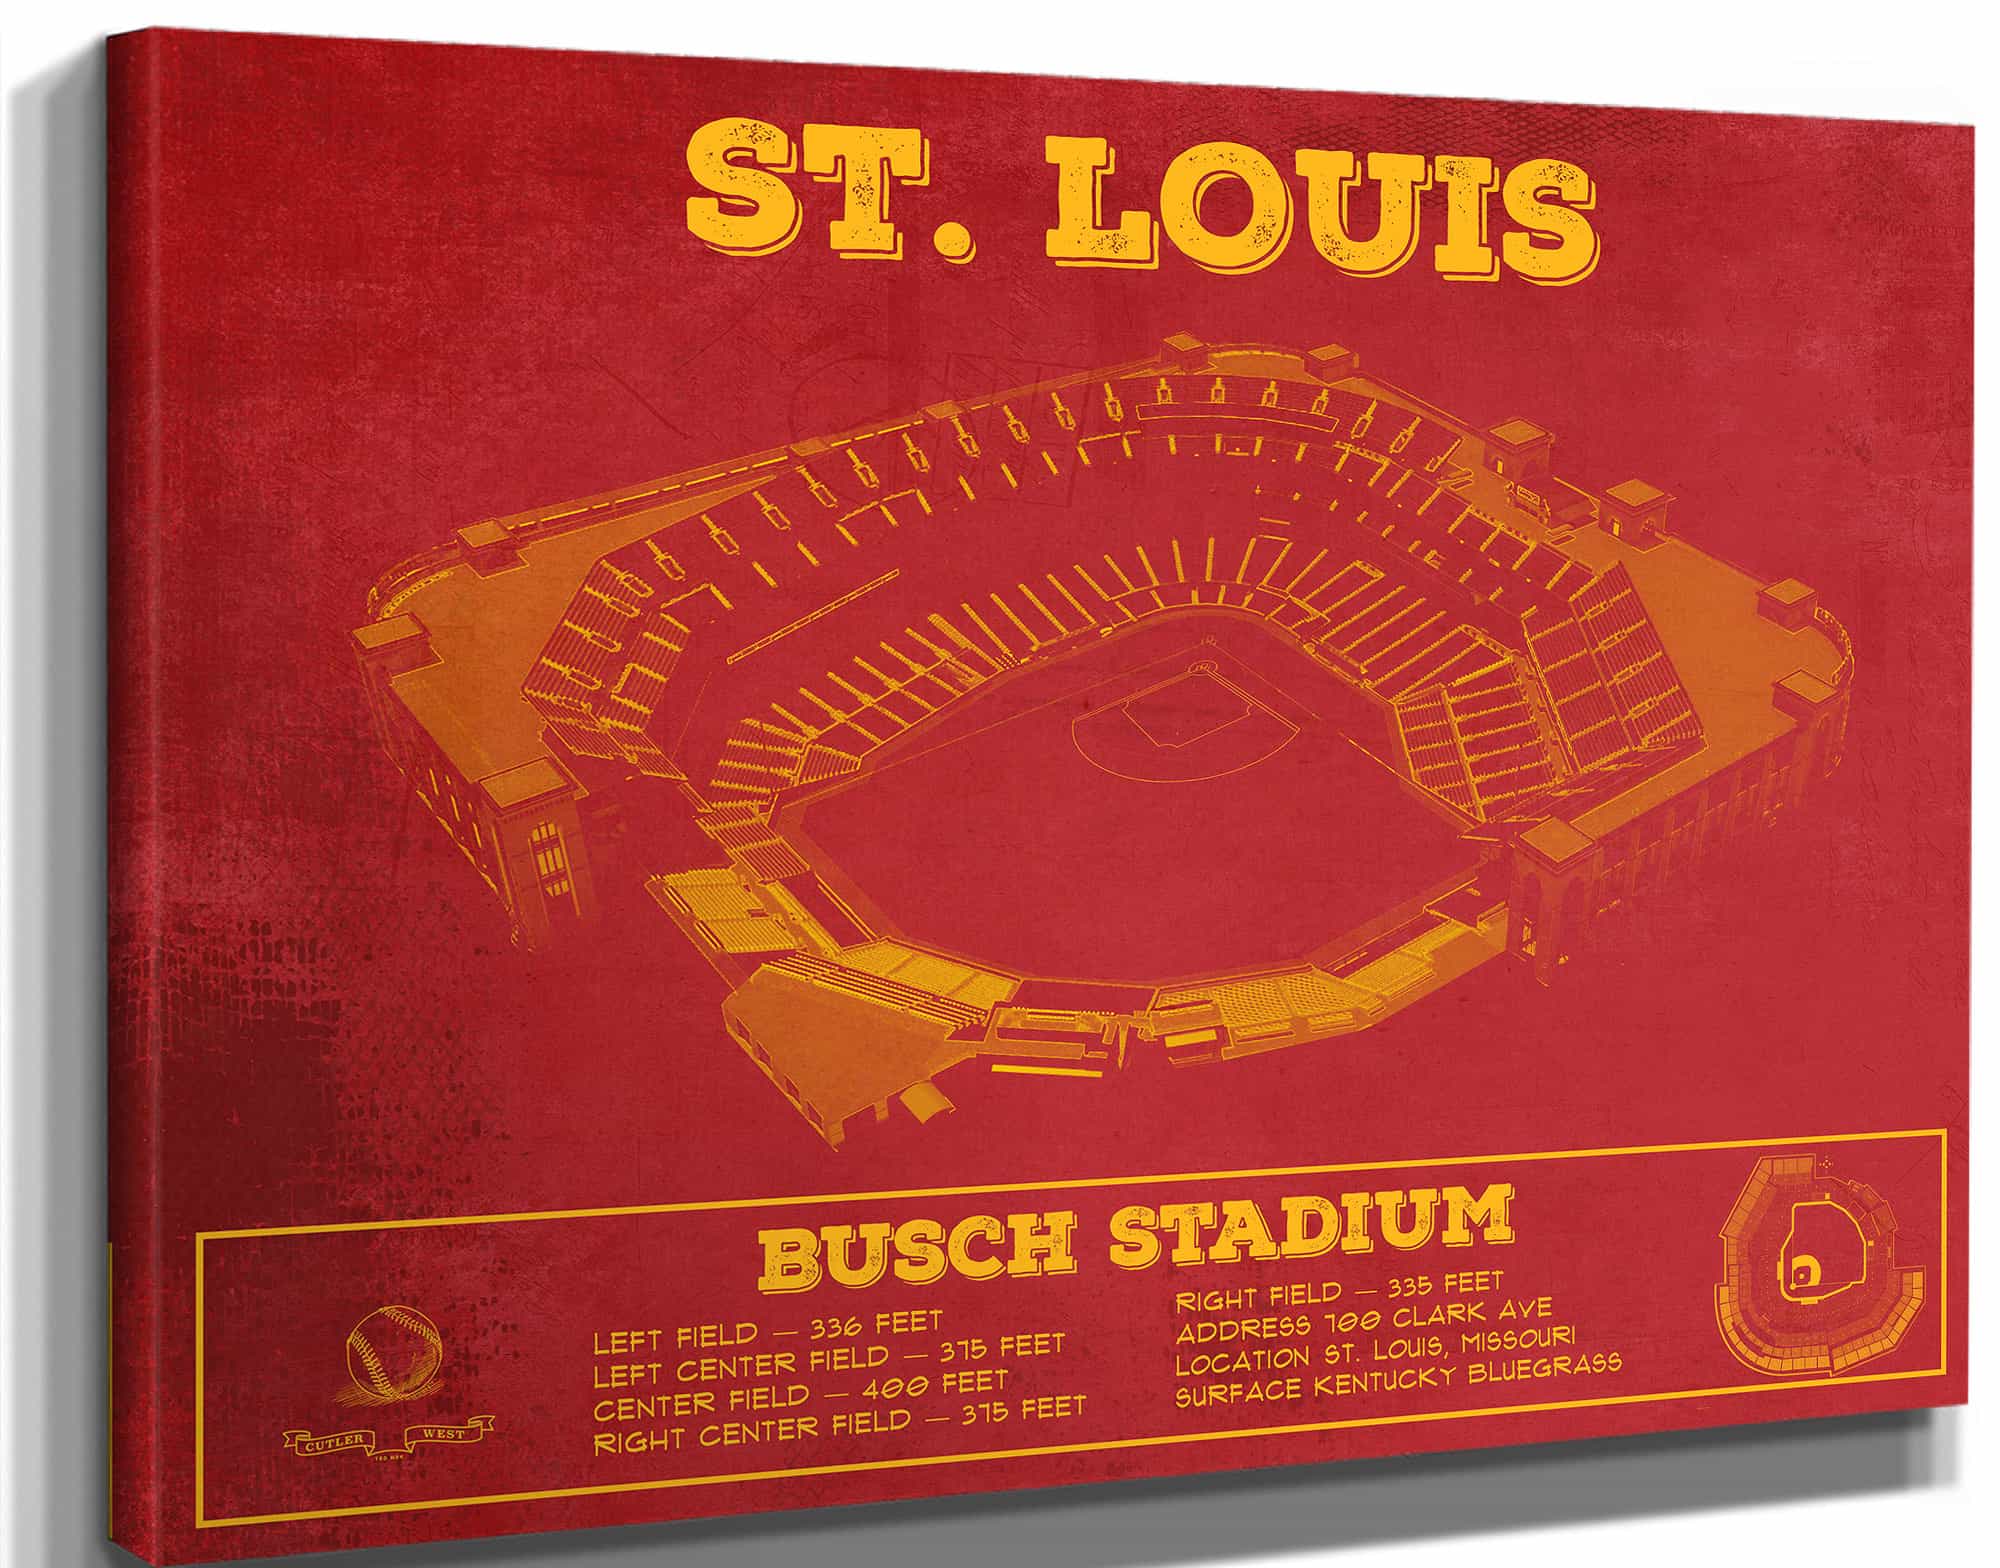 St. Louis Cardinals - Busch Stadium Vintage Baseball Print